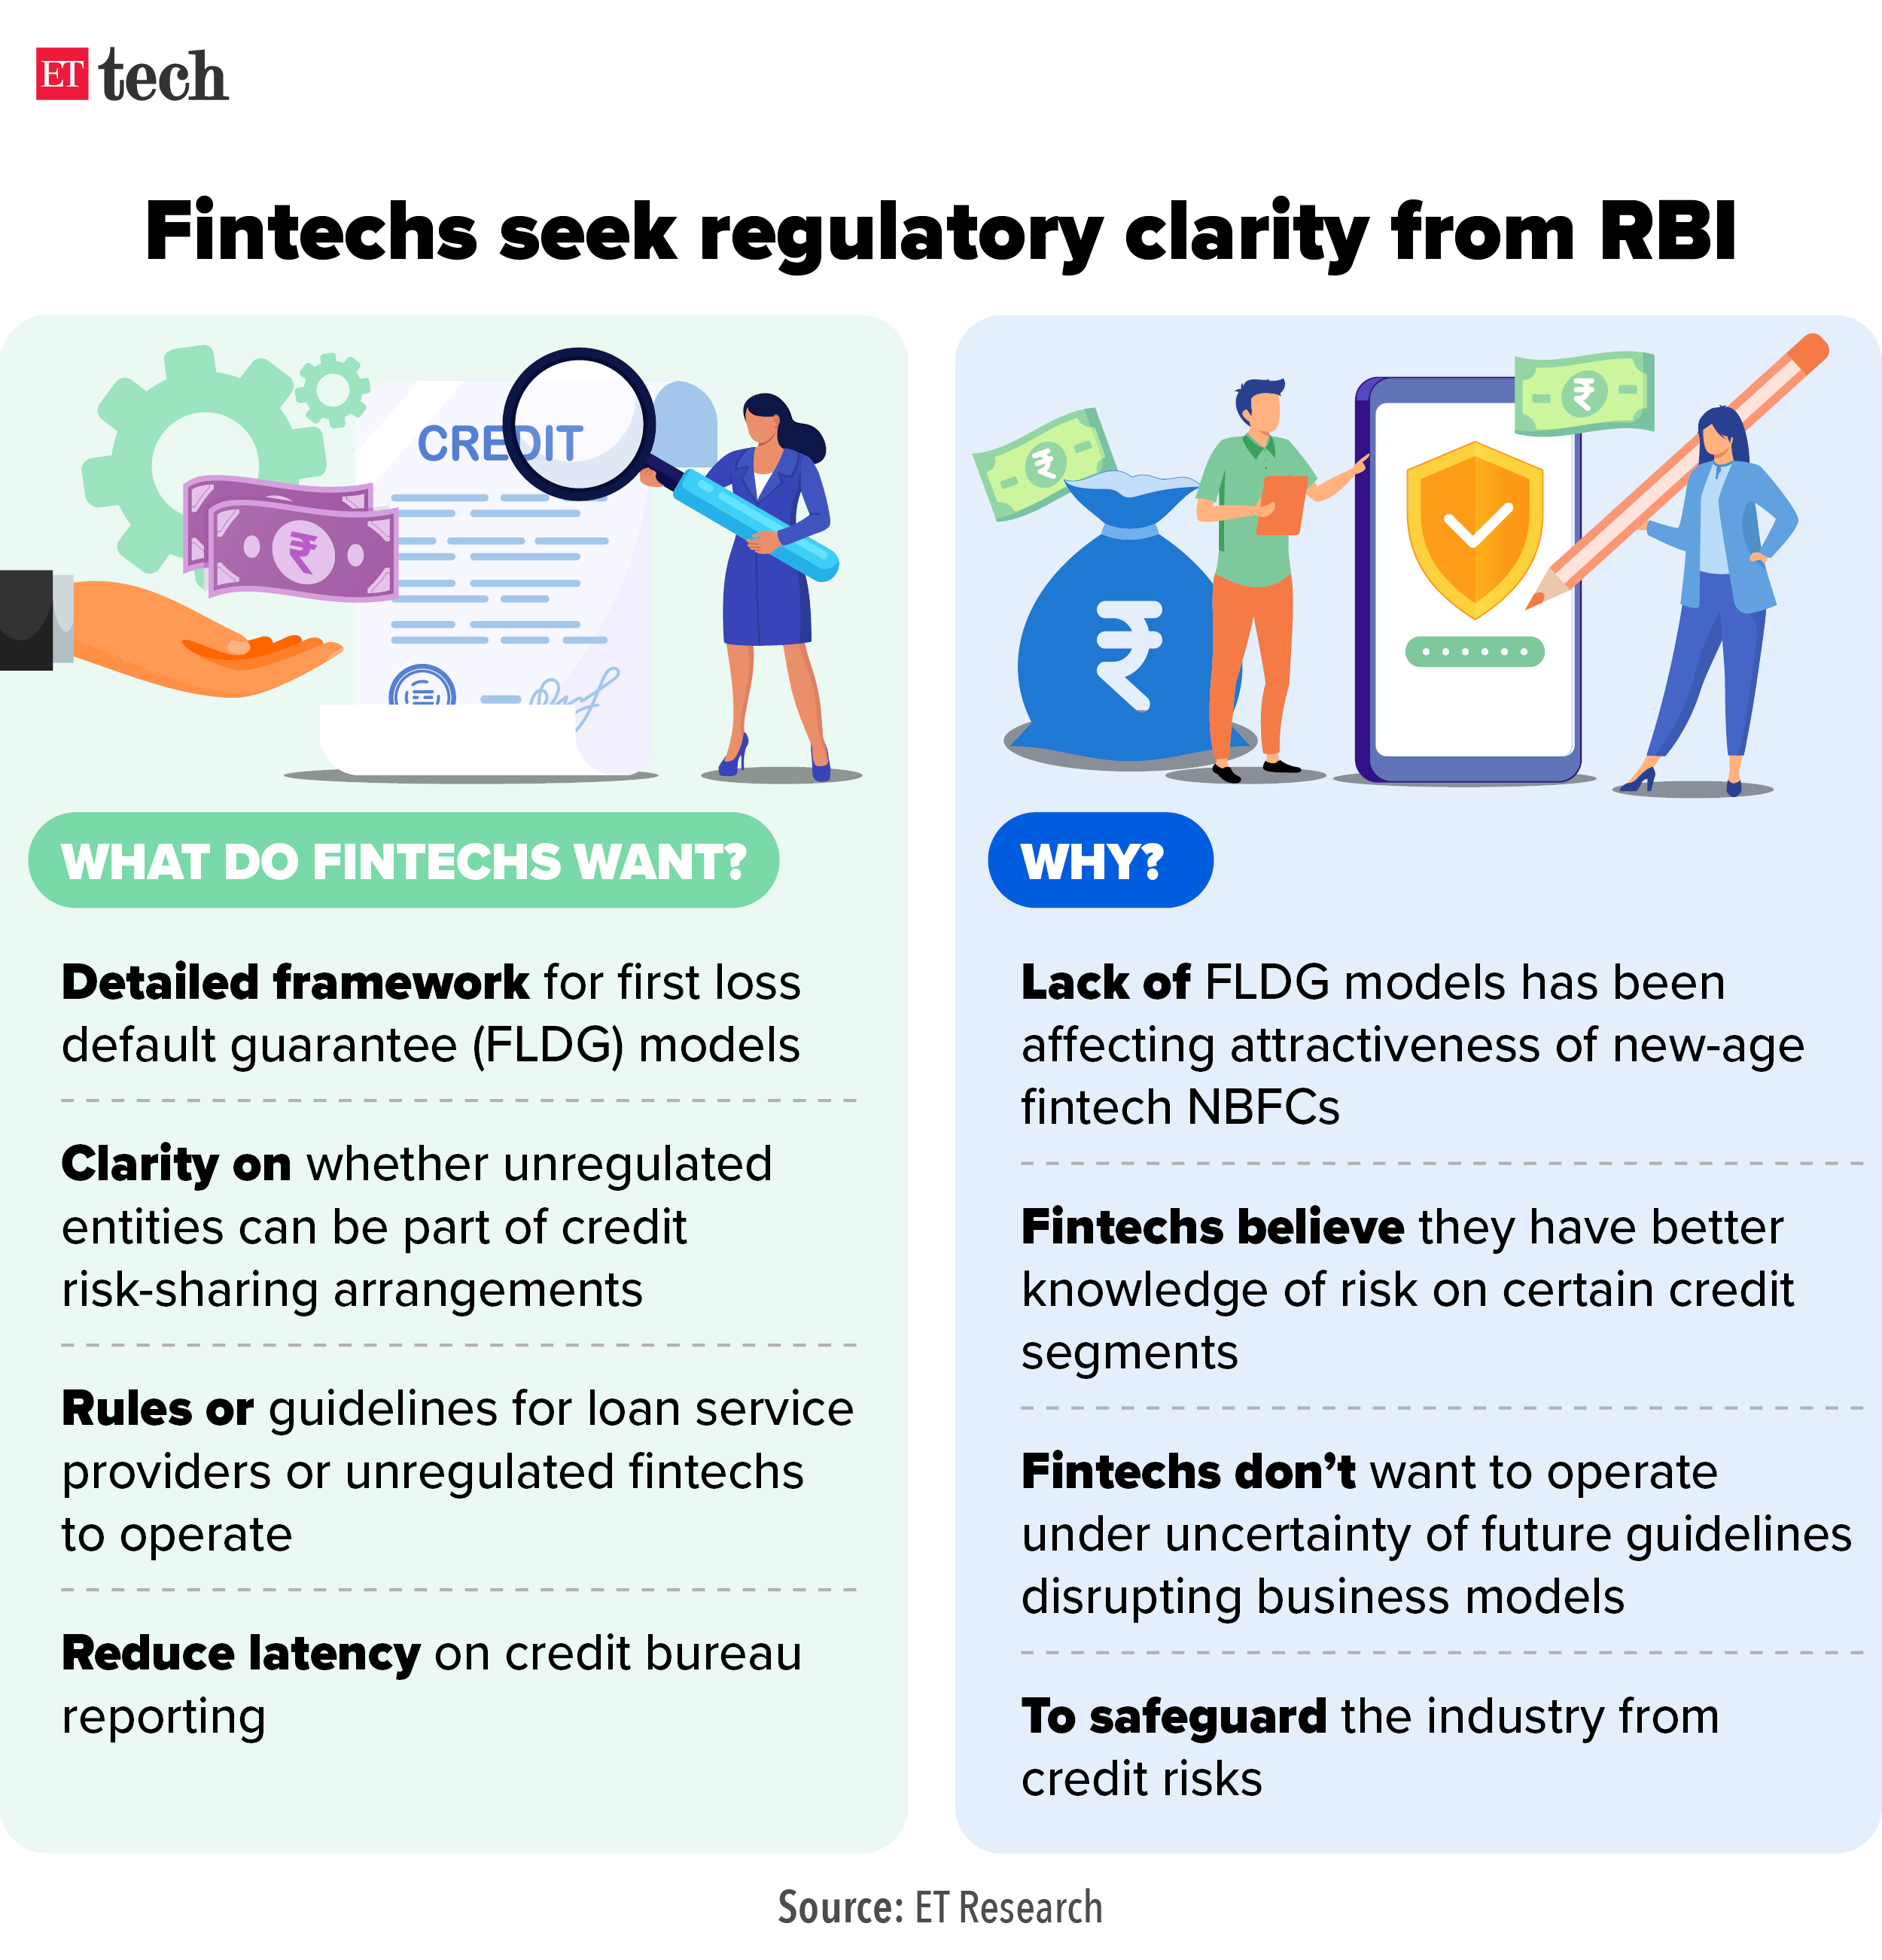 Fintechs seek regulatory clarity from RBI